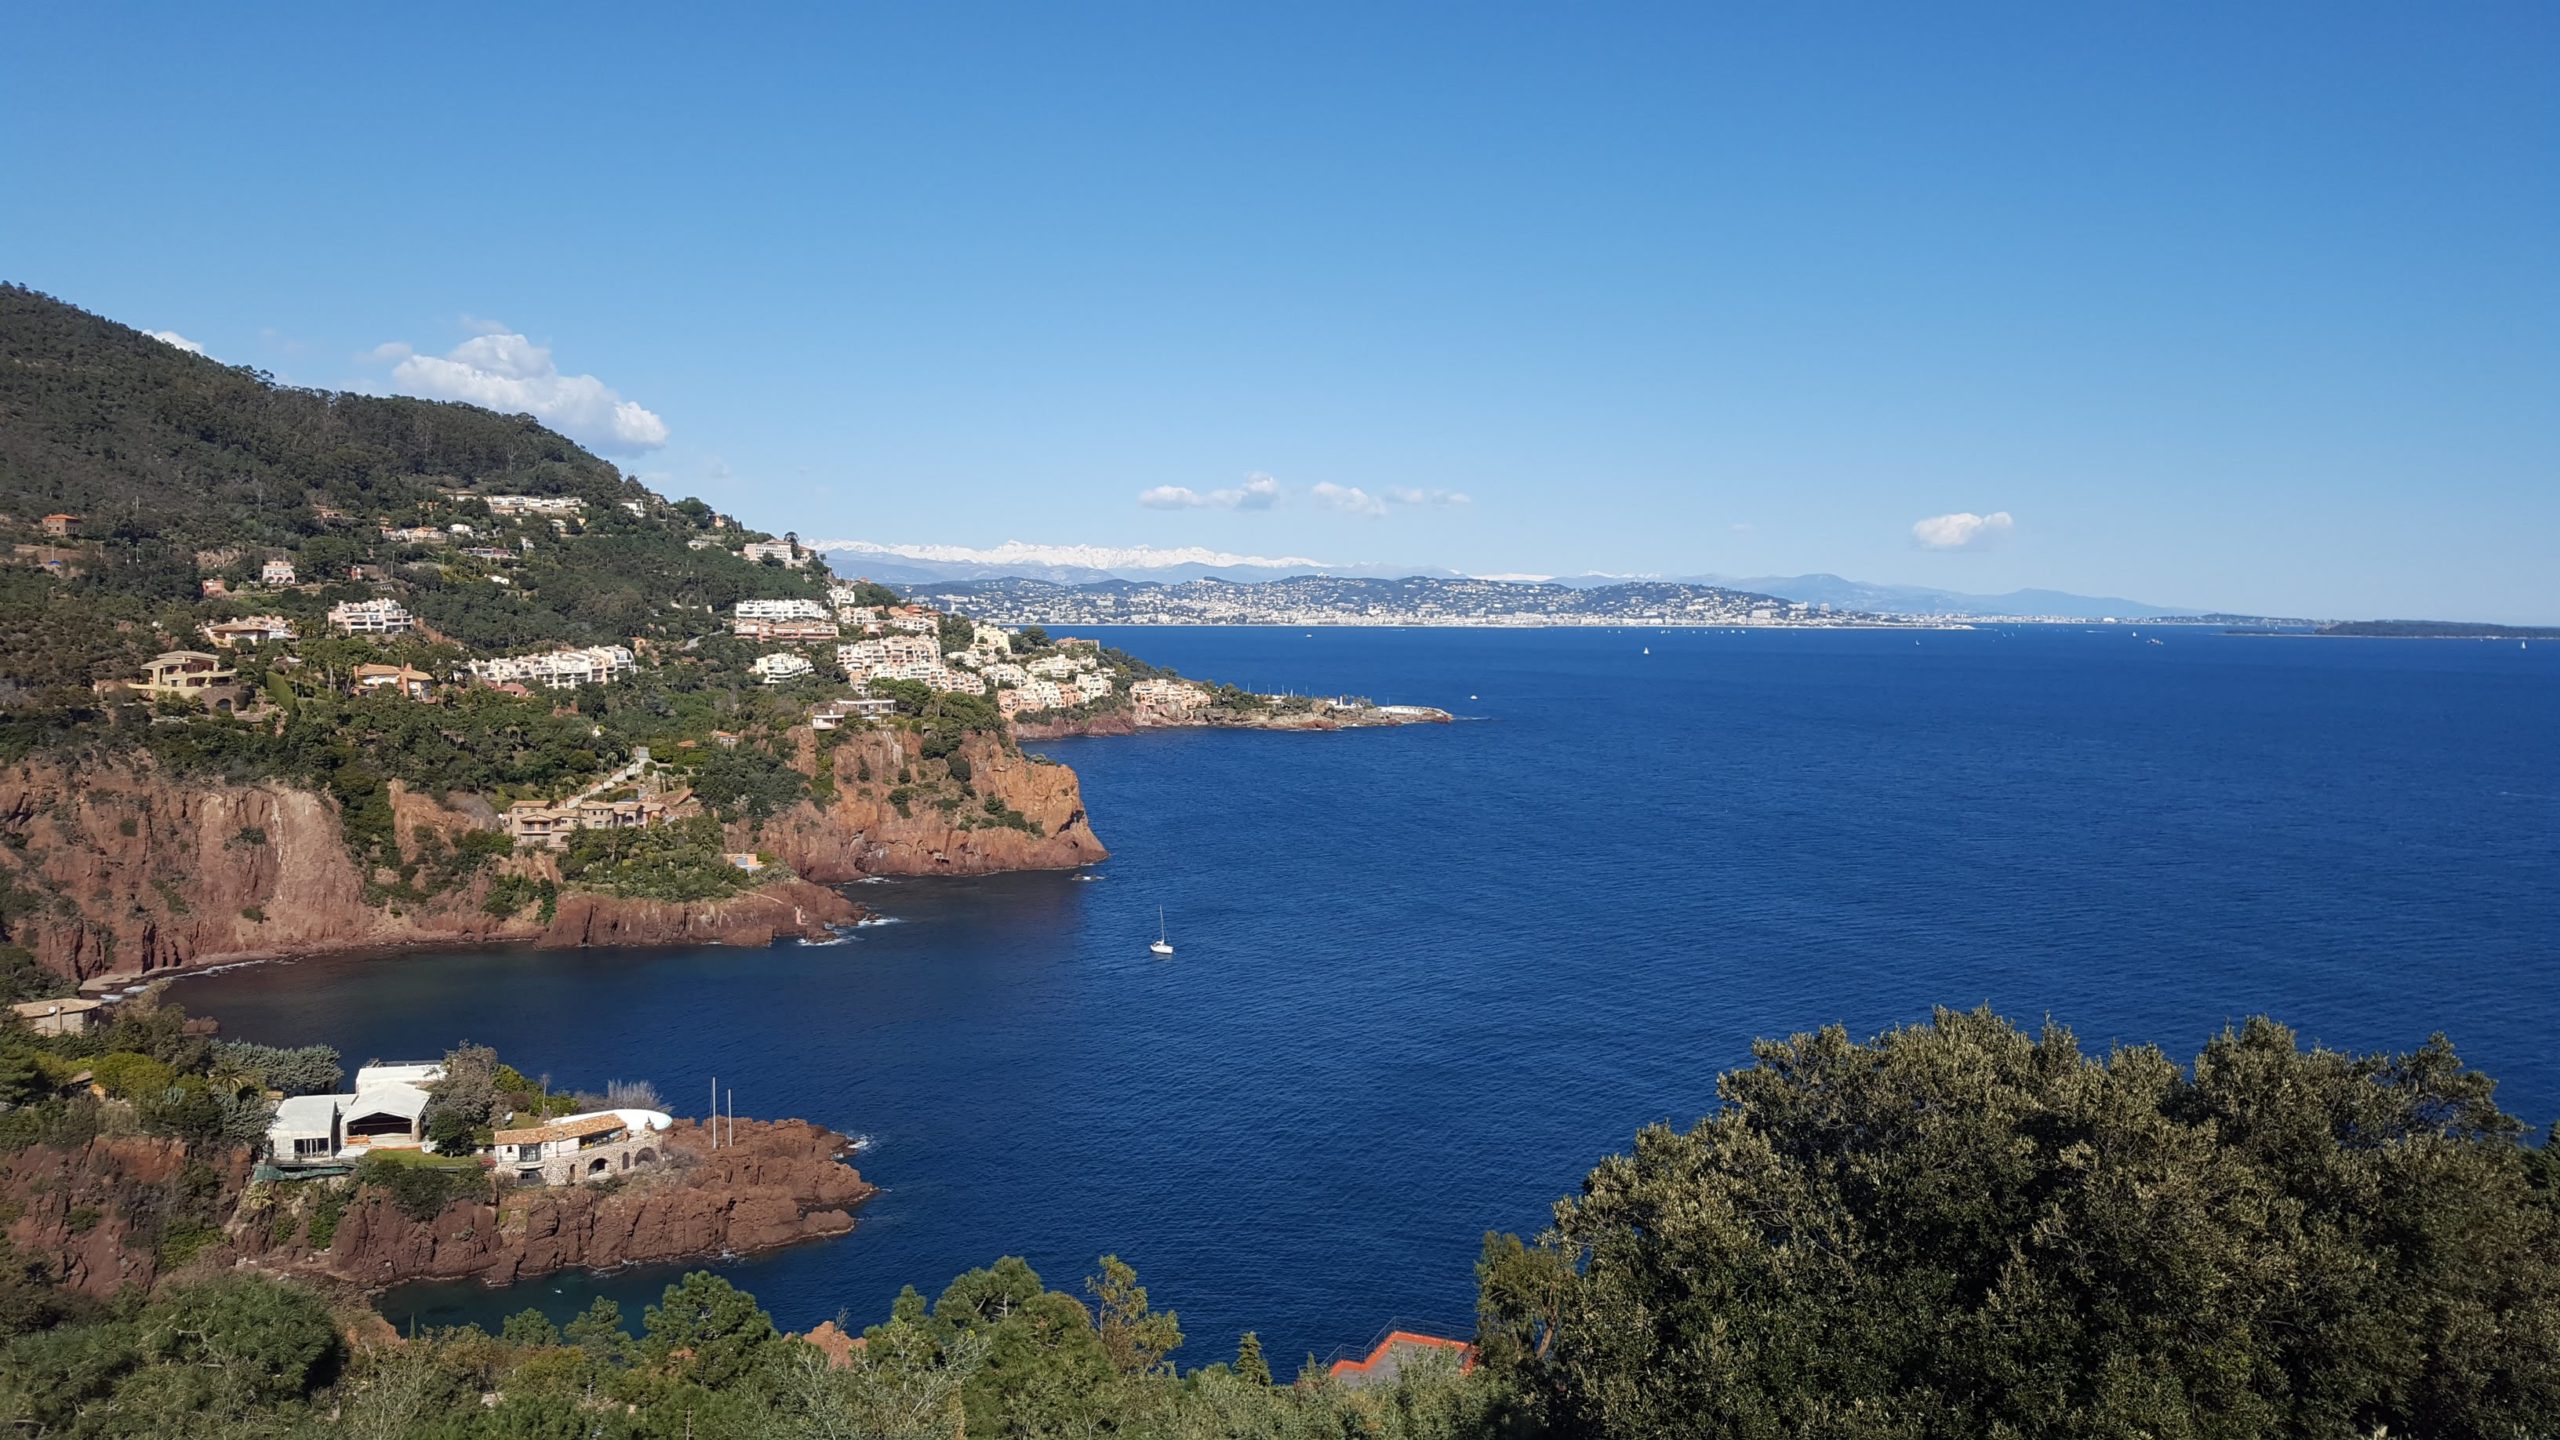 une des vues de la route de la corniche d'or permettant d'admirer les roches rouges, maisons blanches, la vegetation, la mer bleue marine et cannes et les collines au loin